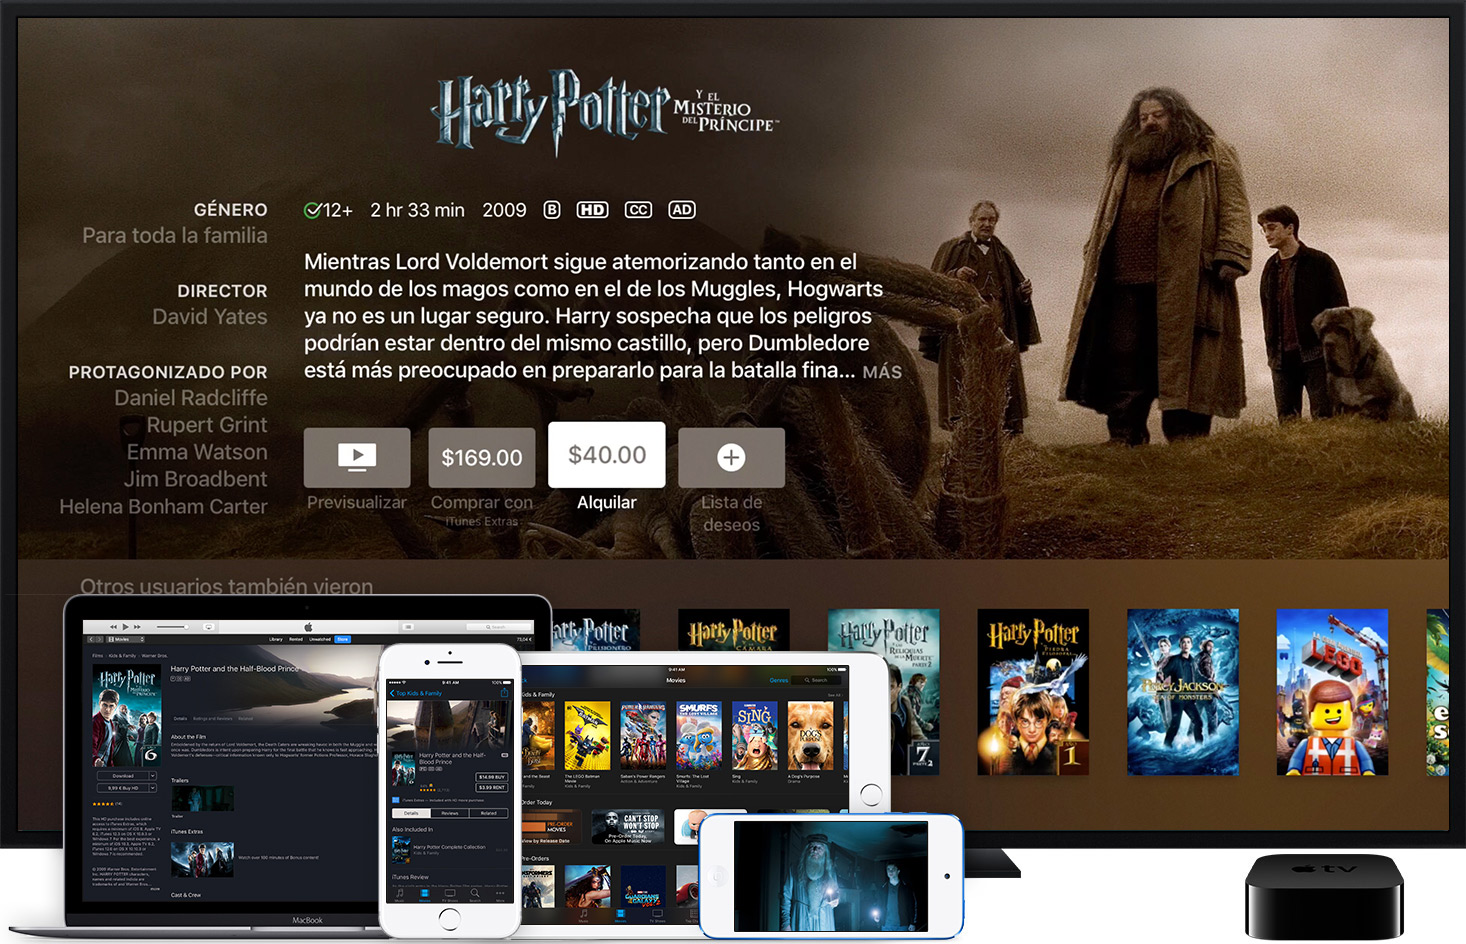 Universal Pictures y Warner Bros emplearían iTunes para rentar películas de estreno